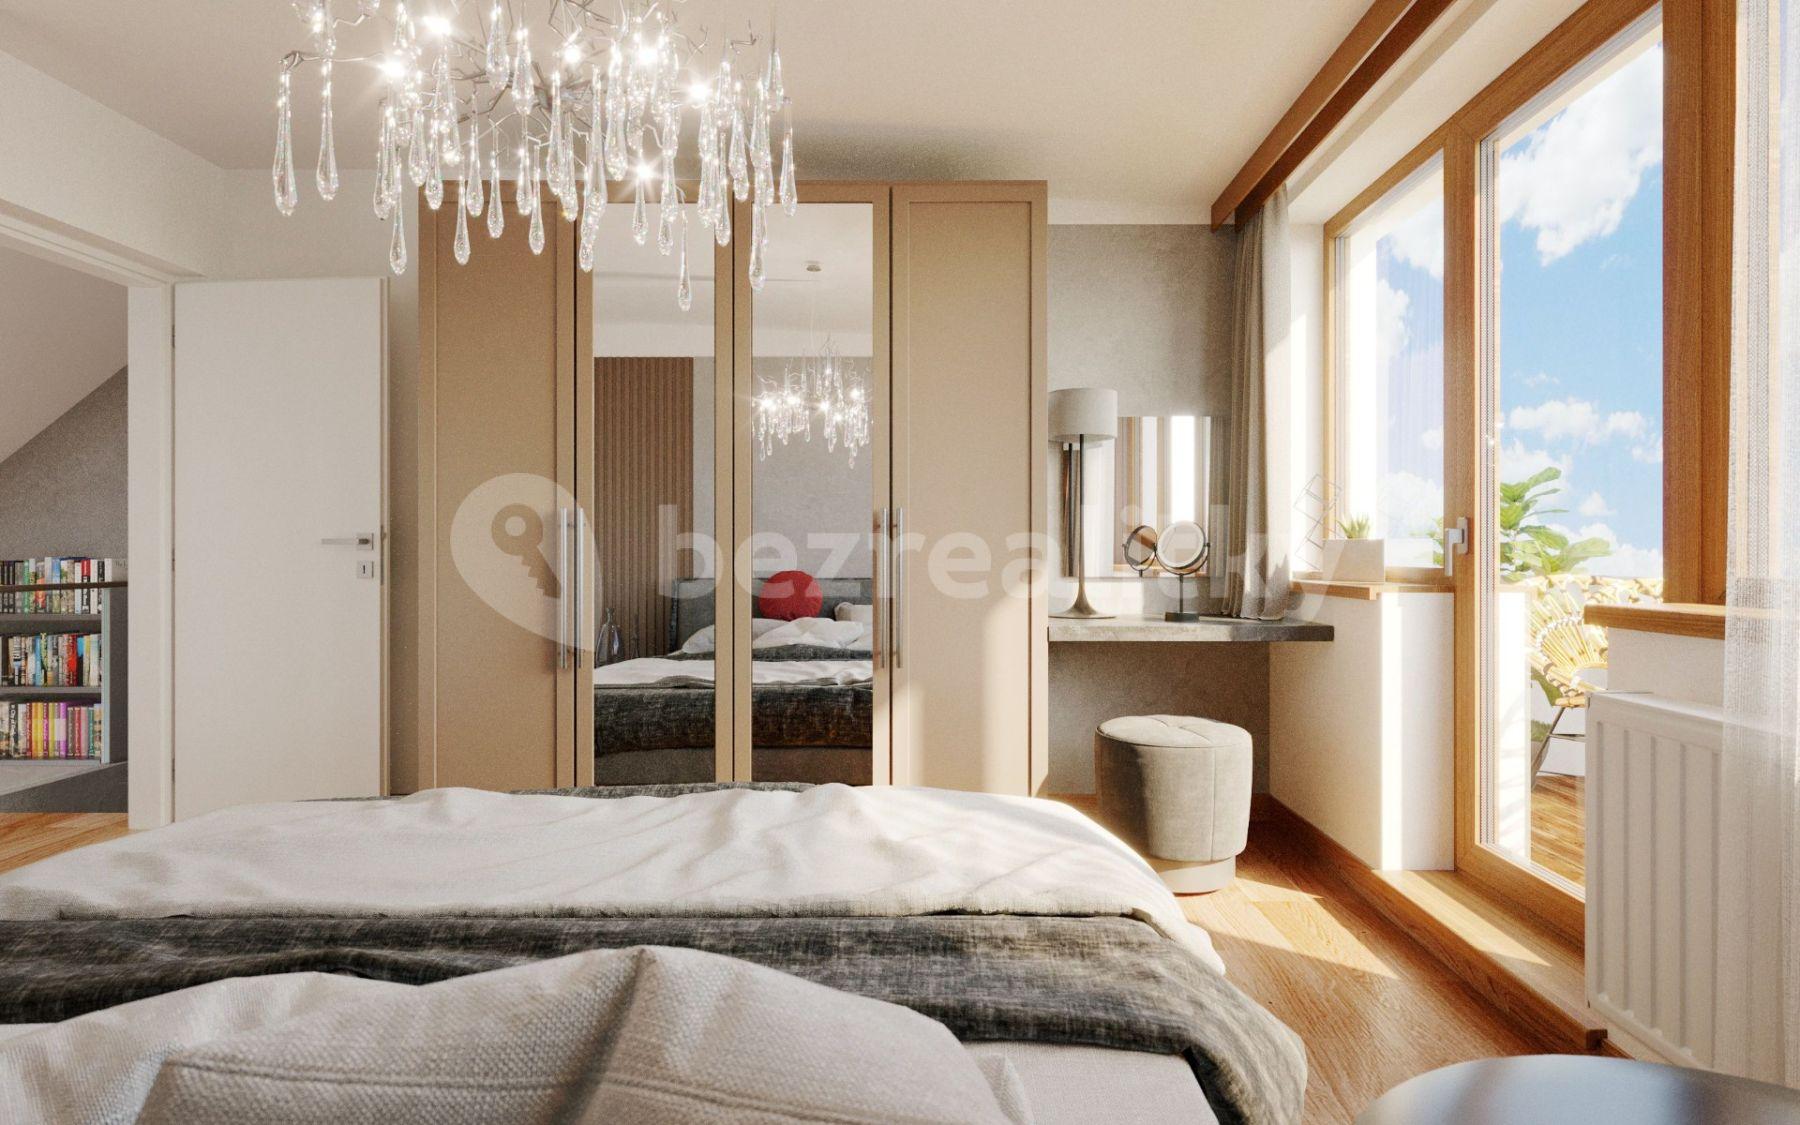 2 bedroom with open-plan kitchen flat for sale, 101 m², Holandská, Prague, Prague